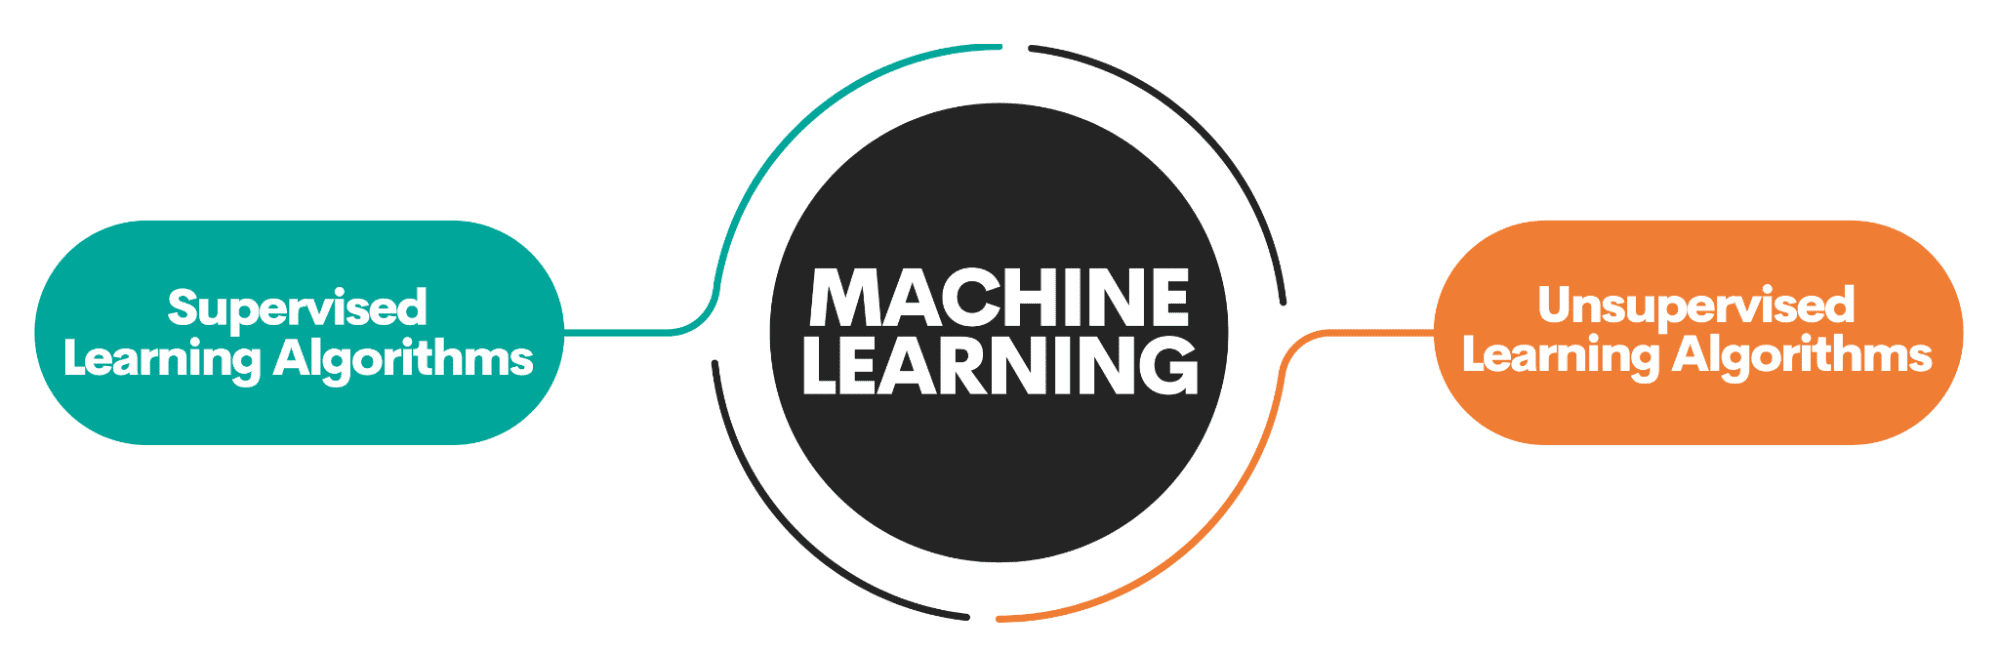 상위 10개 기계 학습 알고리즘에 대한 초보자 가이드